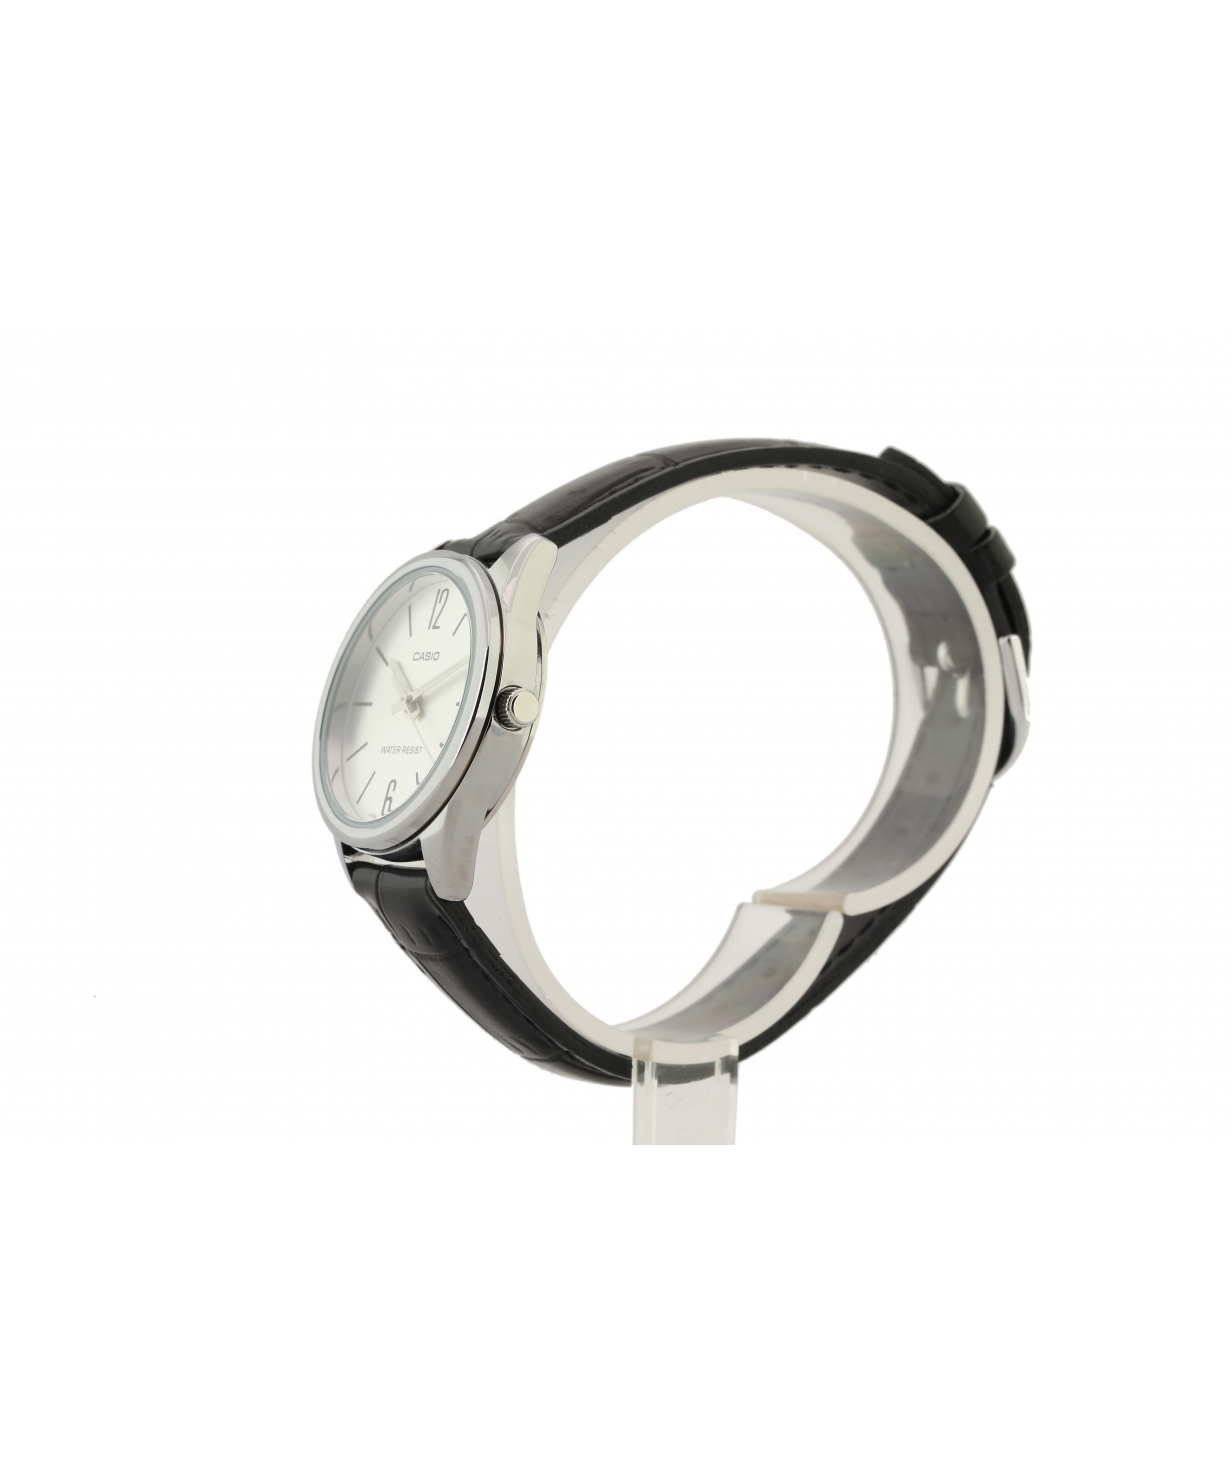 Ժամացույց  «Casio» ձեռքի  LTP-V005L-7BUDF